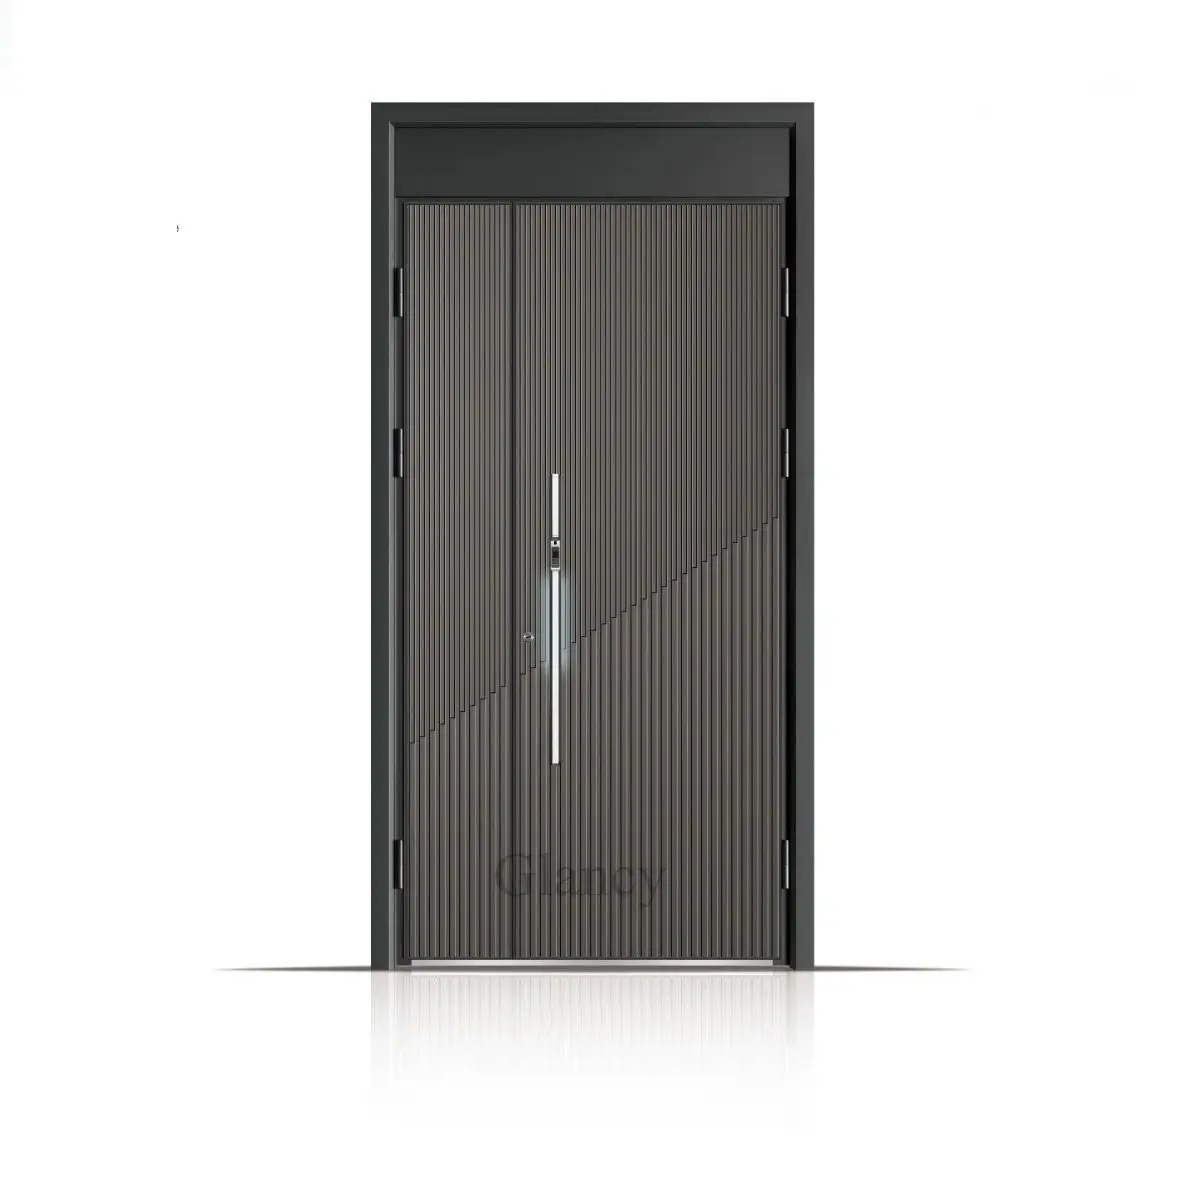 Xport-puerta de acero de seguridad para habitación interior, puerta interior de seguridad